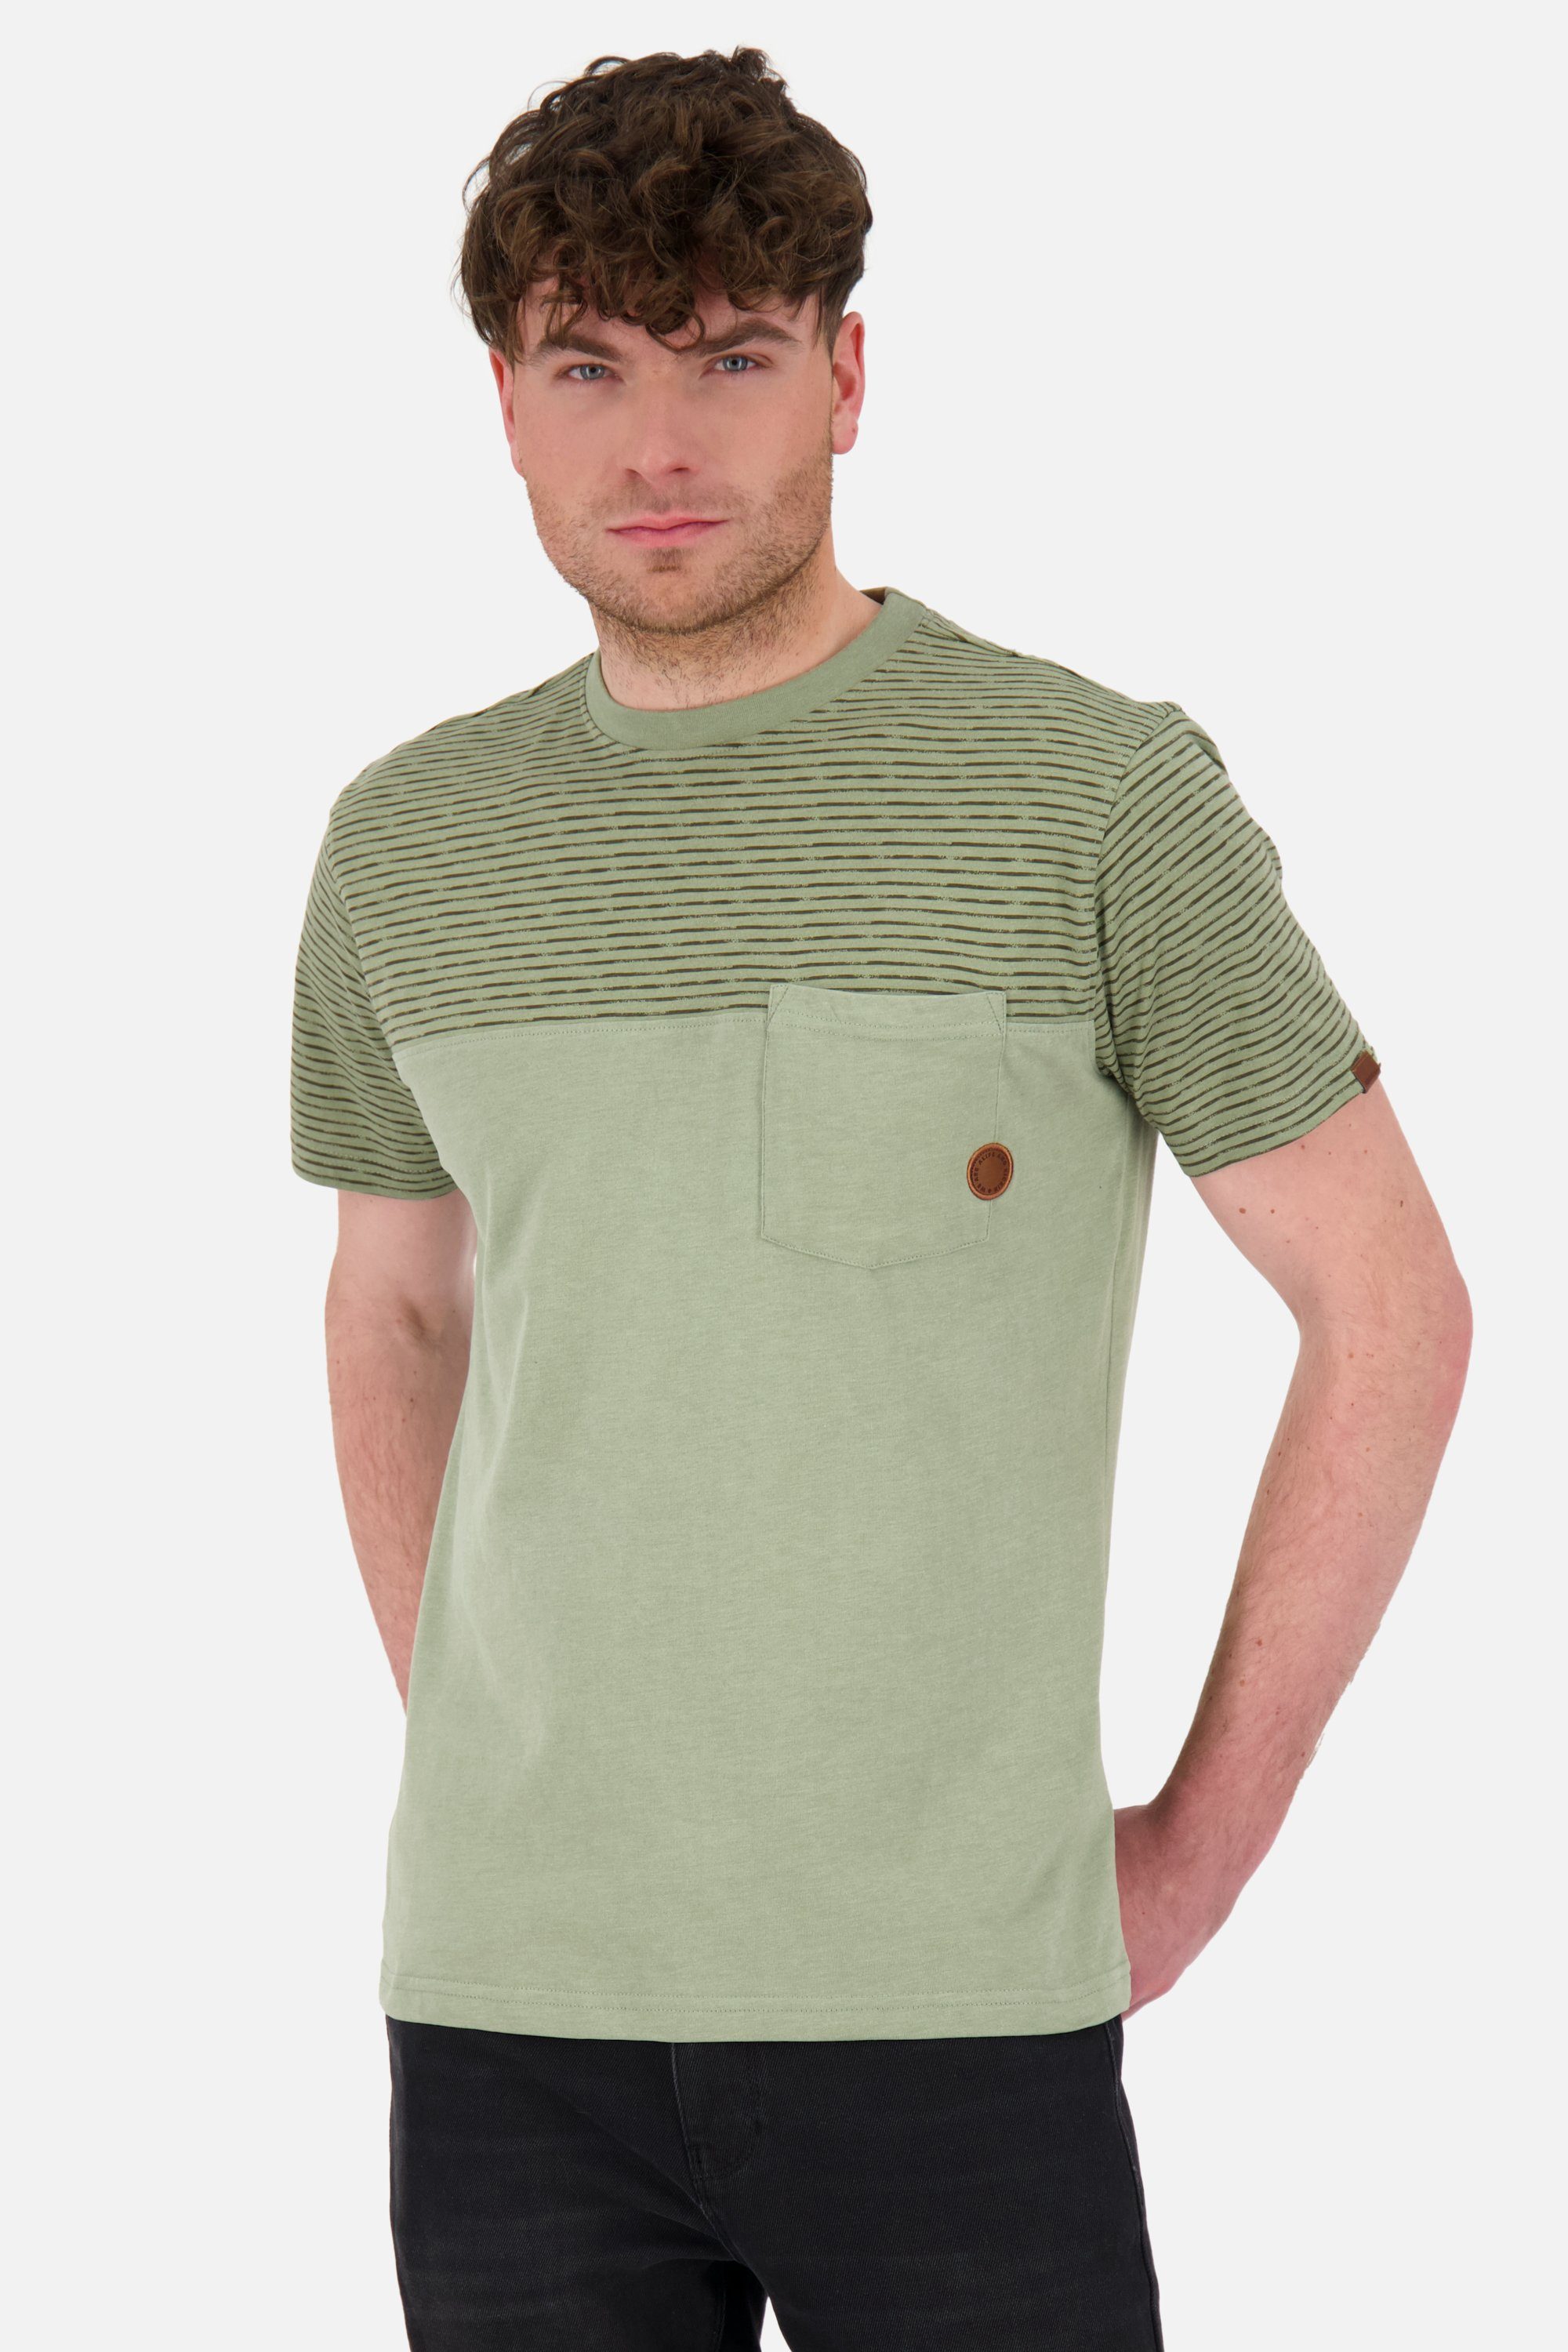 Neueste Produkte dieser Saison Alife & Kickin Shirt melange Shirt dust LeopoldAK Herren Kurzarmshirt, Rundhalsshirt Z